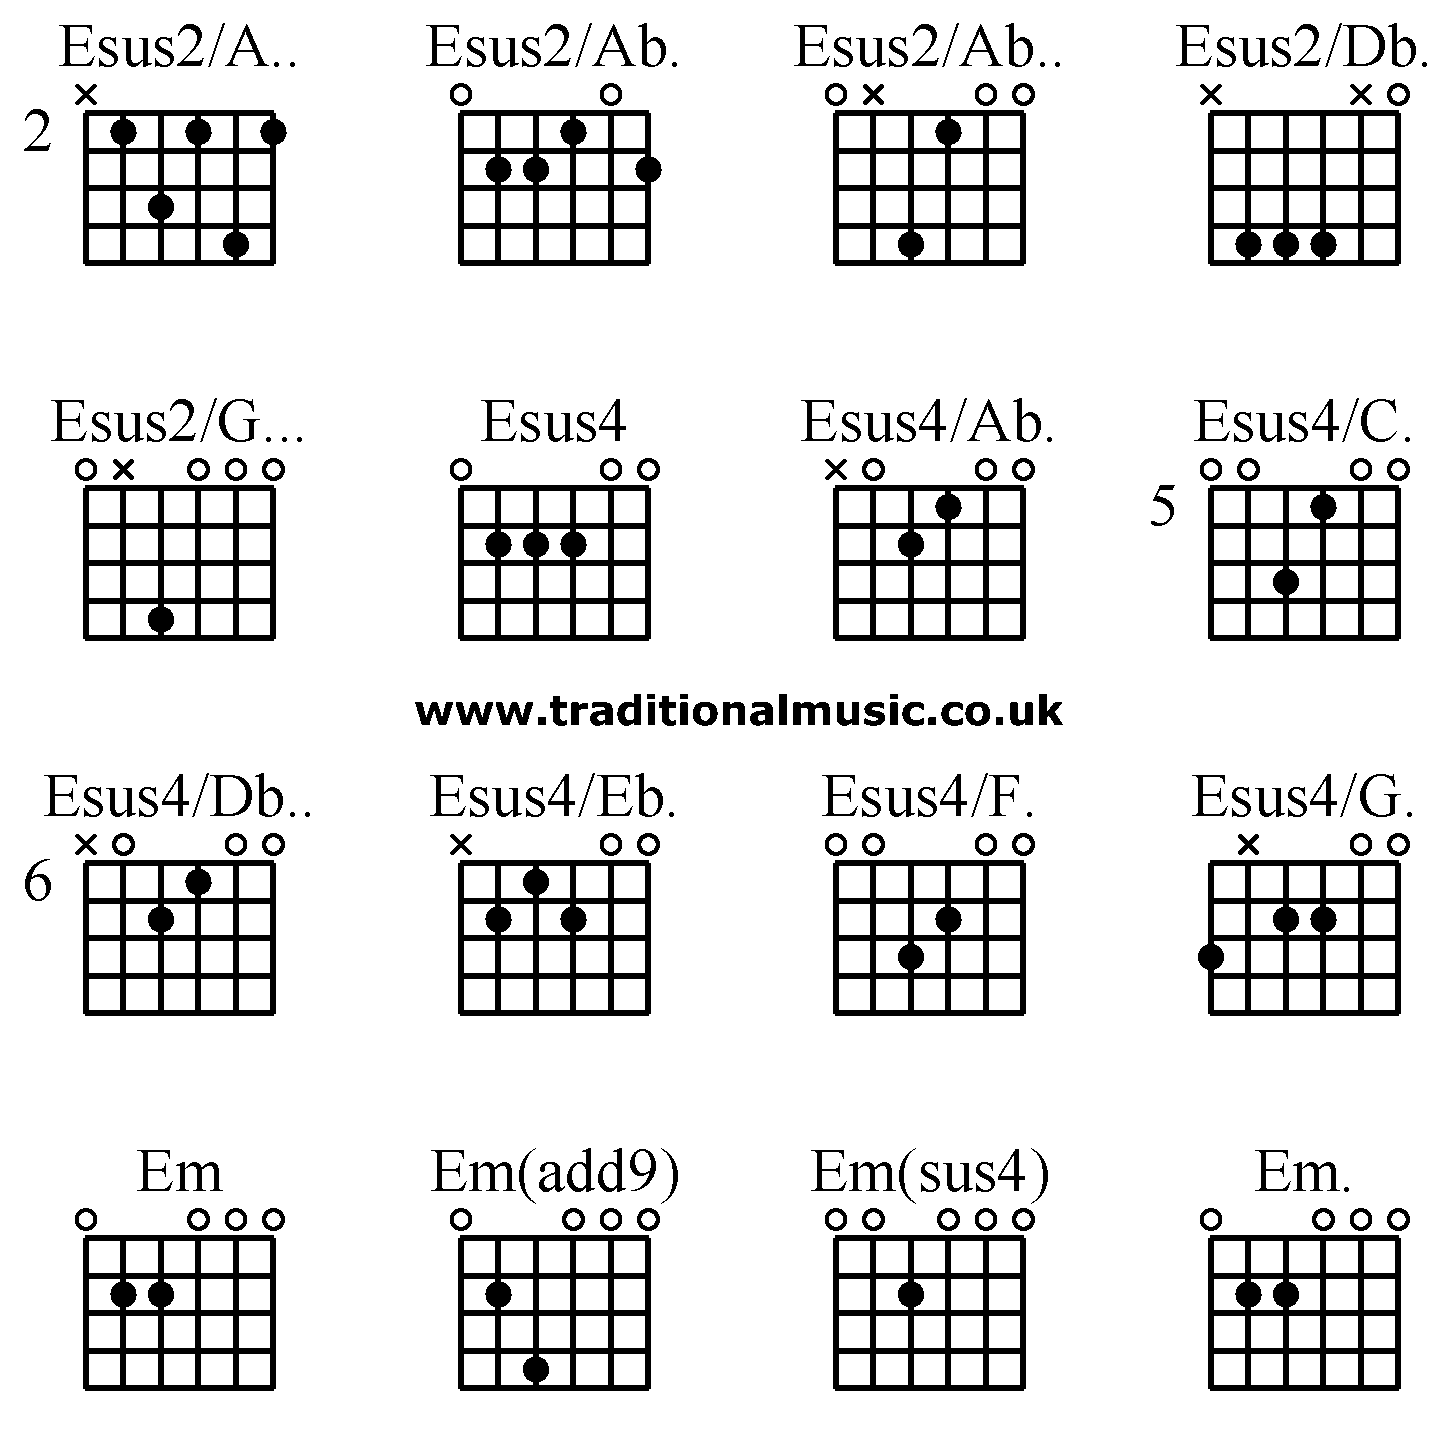 Advanced guitar chords:Esus2/A.. Esus2/Ab. Esus2/Ab.. Esus2/Db. Esus2/G... Esus4 Esus4/Ab. Esus4/C. Esus4/Db.. Esus4/Eb. Esus4/F. Esus4/G. Em Em(add9) Em(sus4) Em.